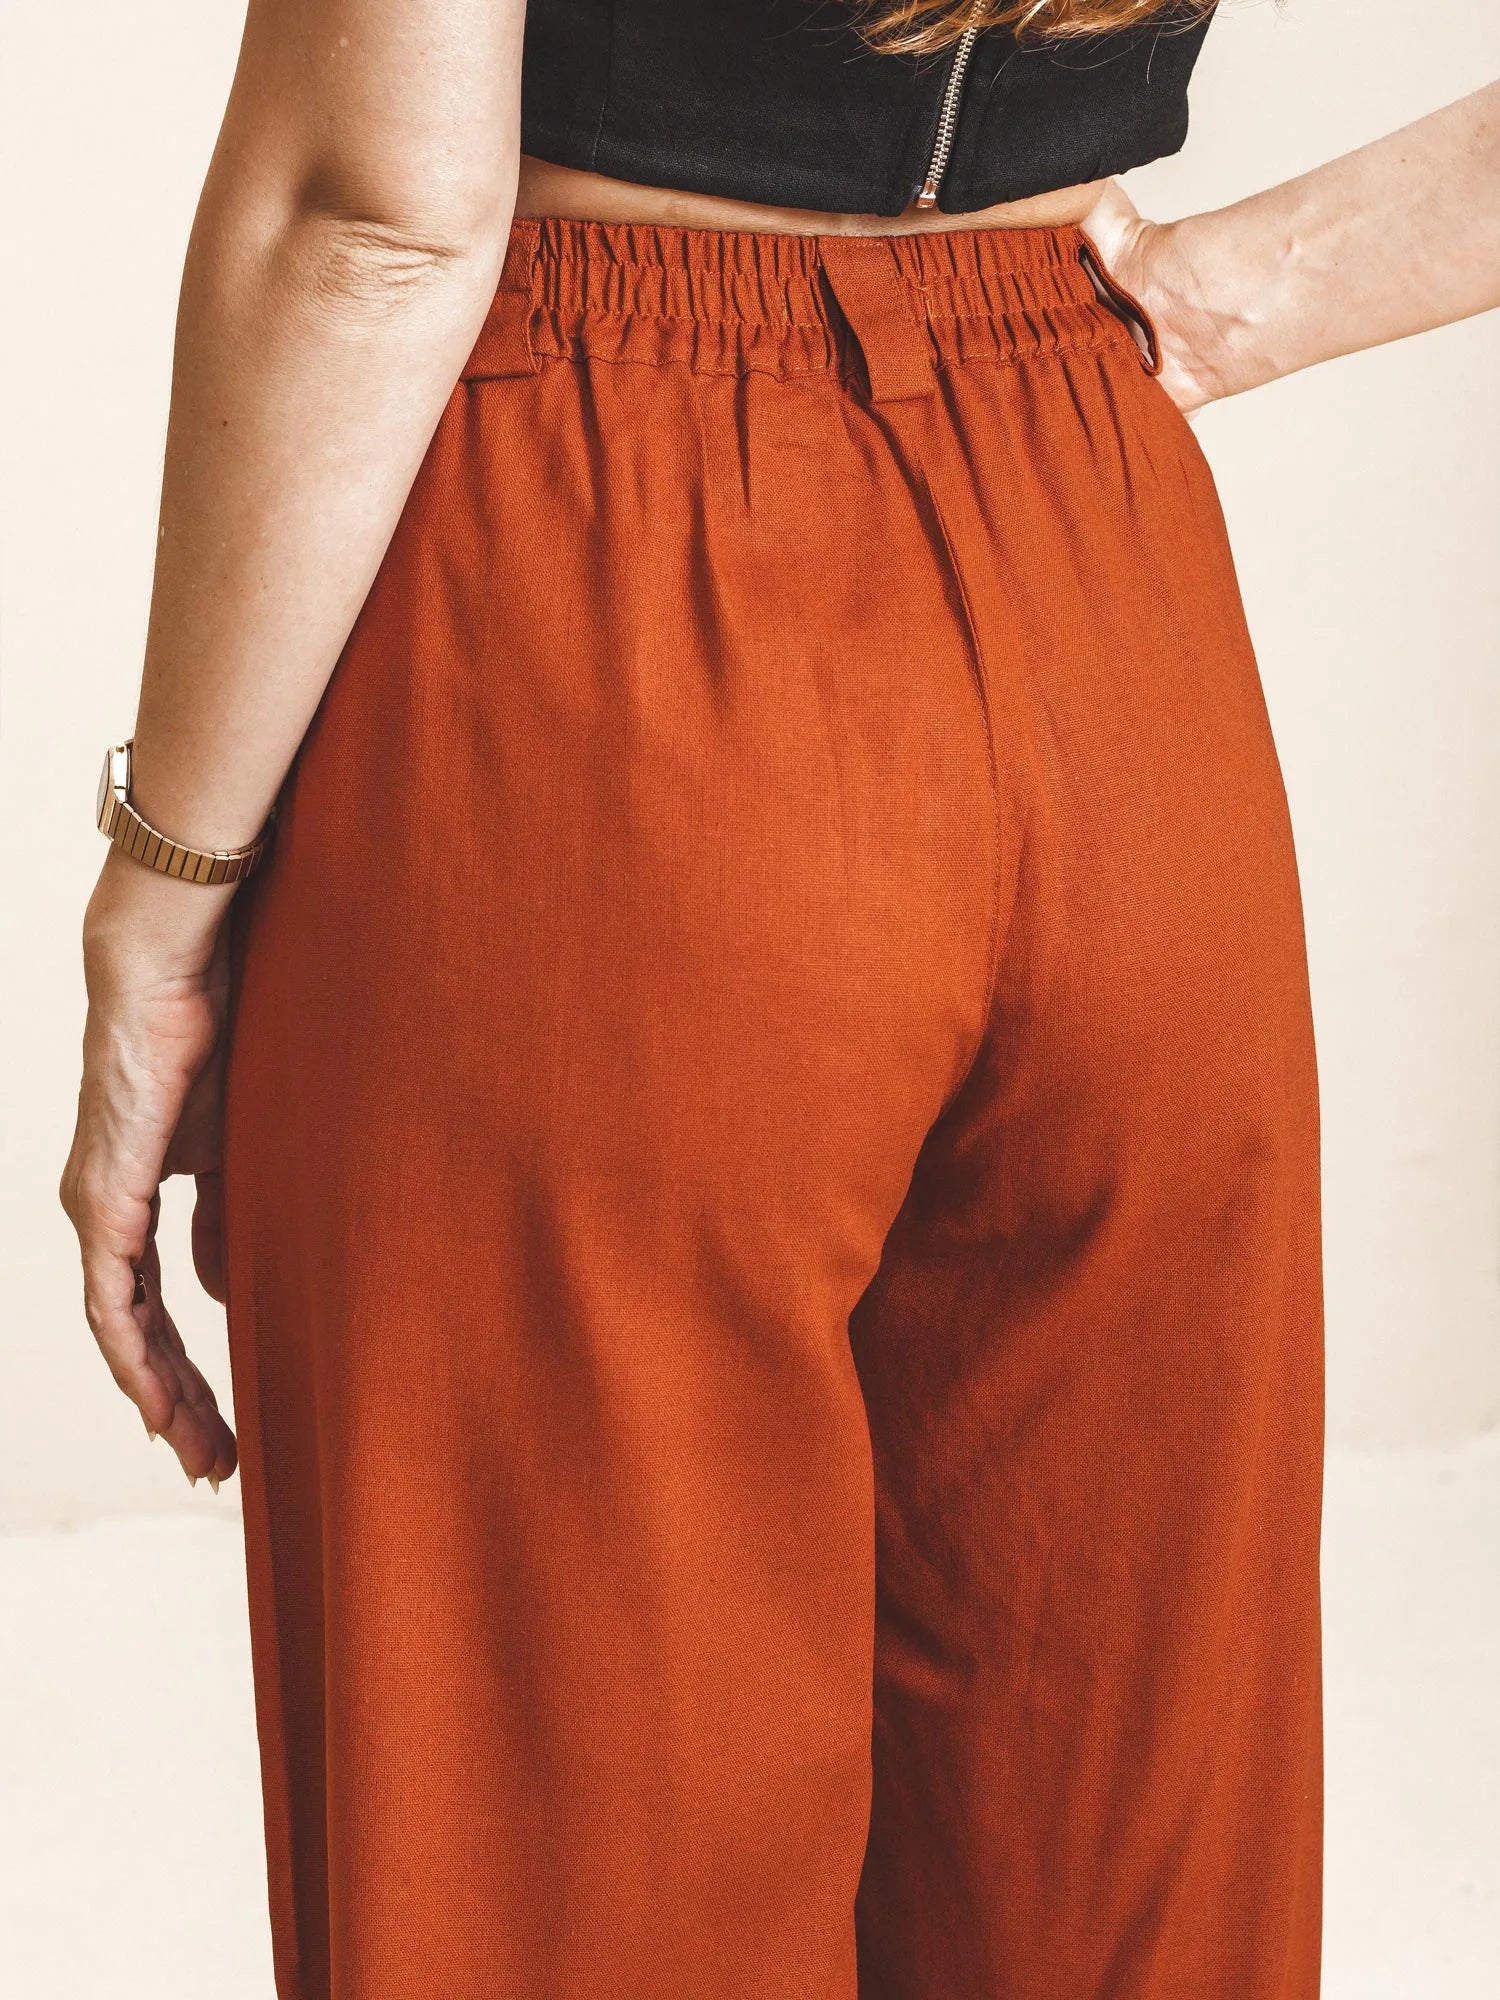 Calça Pantalona de Alfaiataria em Linho e Viscose FSC™ Marrom Terracota. Compre online moda sustentável e atemporal na Minimadeia. Roupas femininas estilosas, básicas e sustentáveis. Foto produto 09